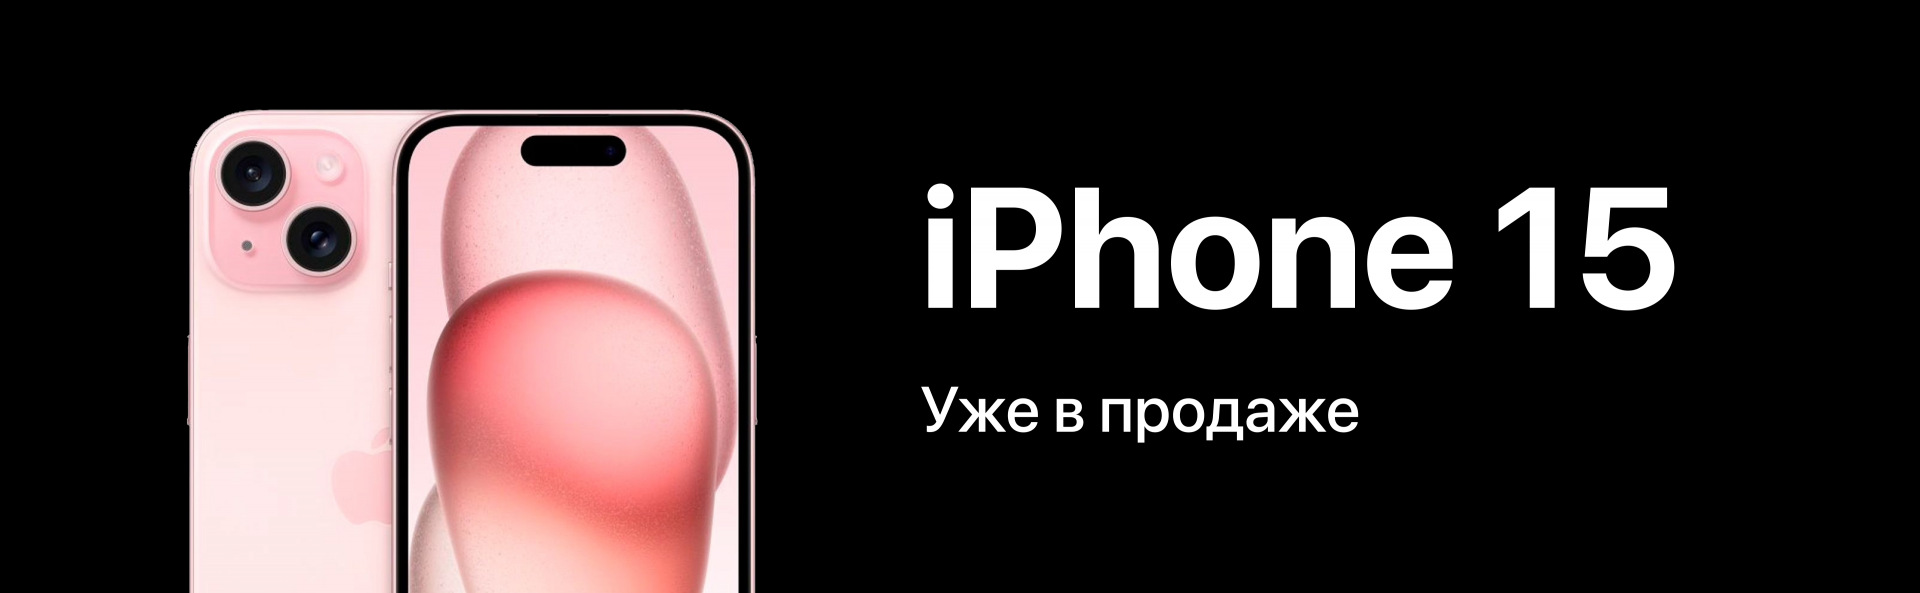 Купить iPhone (Айфон) в Москве на Горбушке по самым низким ценам